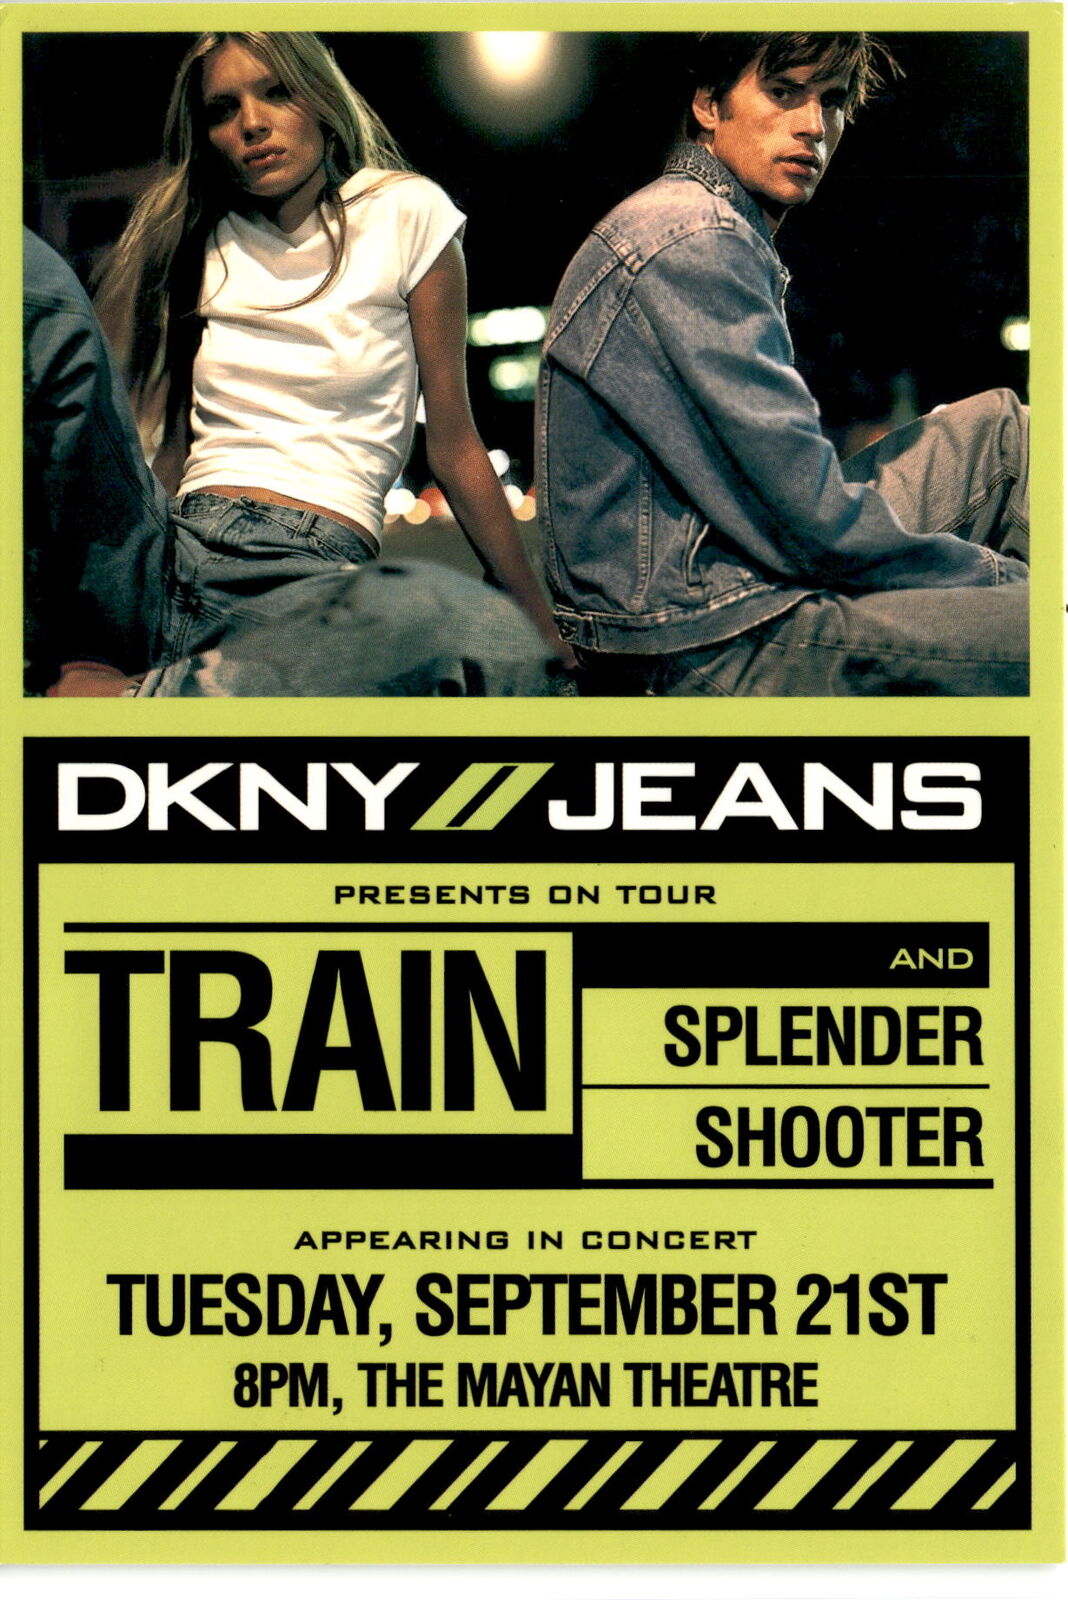 DKNY JEANS event, Train, Splender, concert, Tuesday, September 21st, Postcard